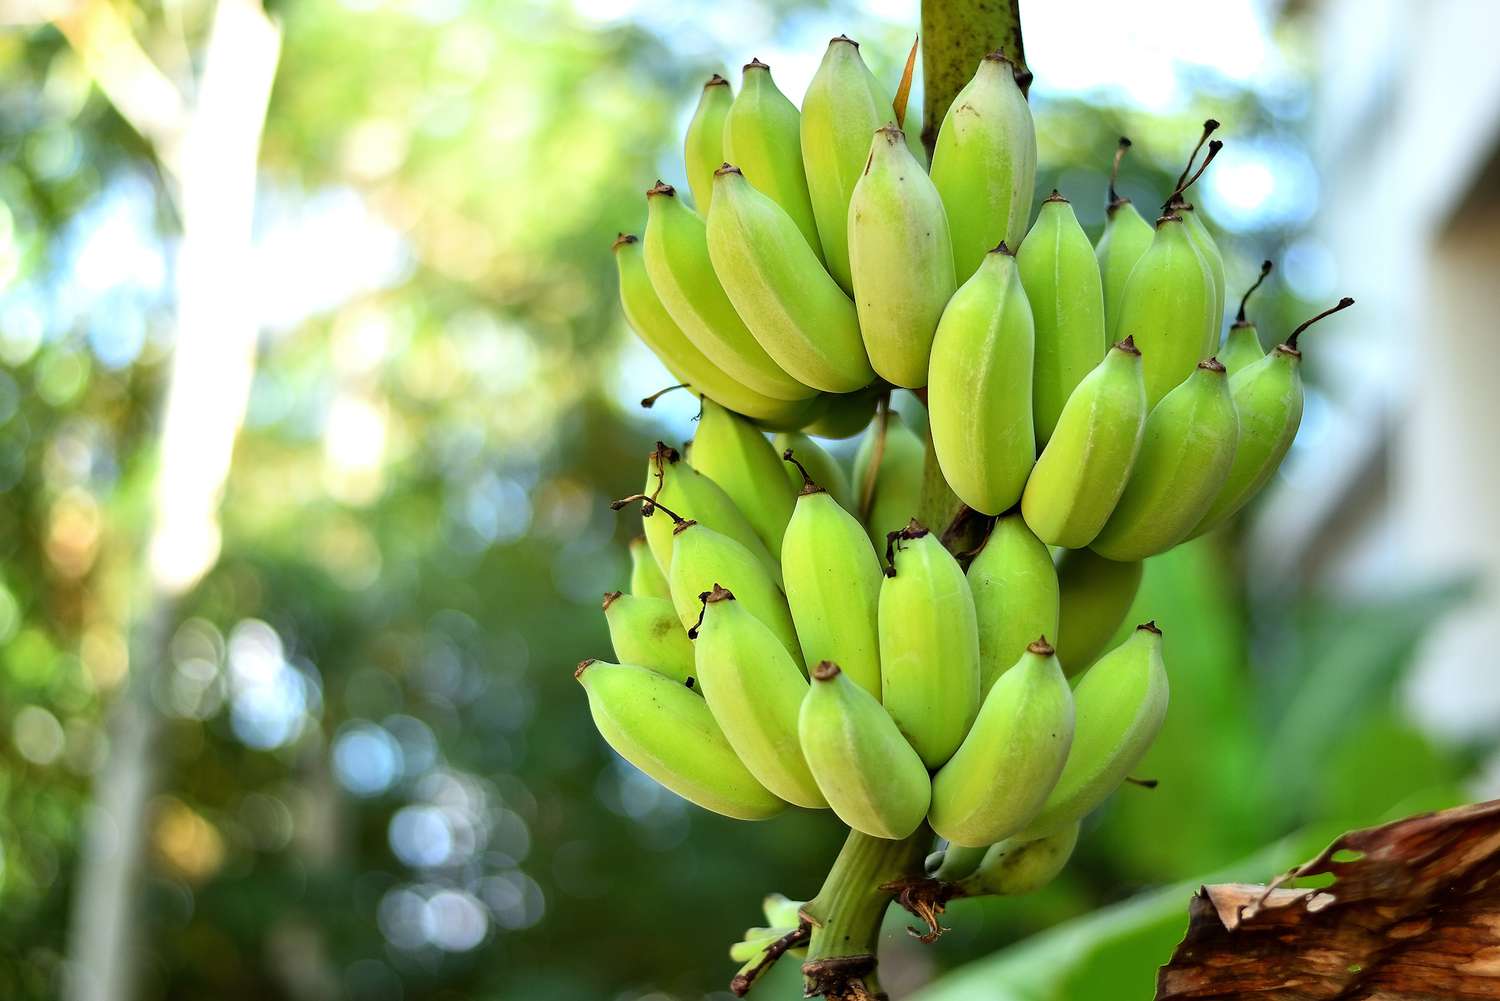 串香蕉生长在茎